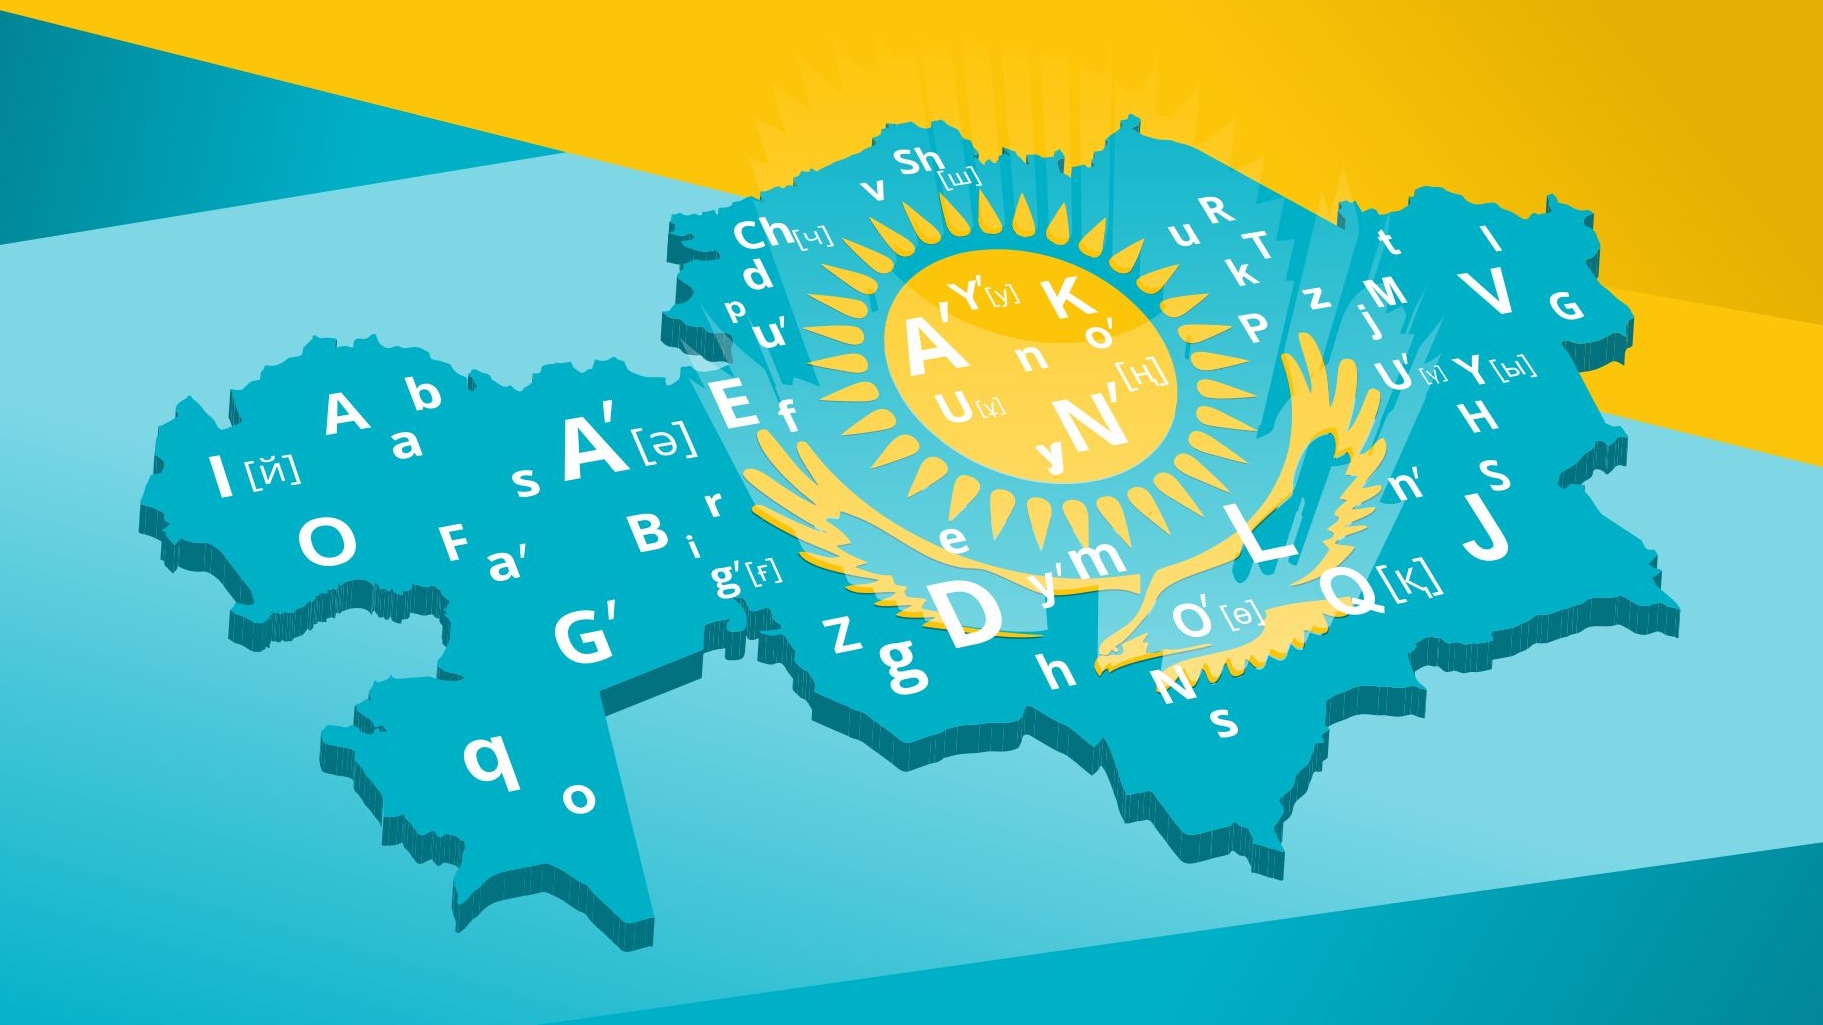 Казахстане и т д. Казахский язык. Казахстан на казахском языке. Казахстан иллюстрация. Языковая политика в Казахстане.